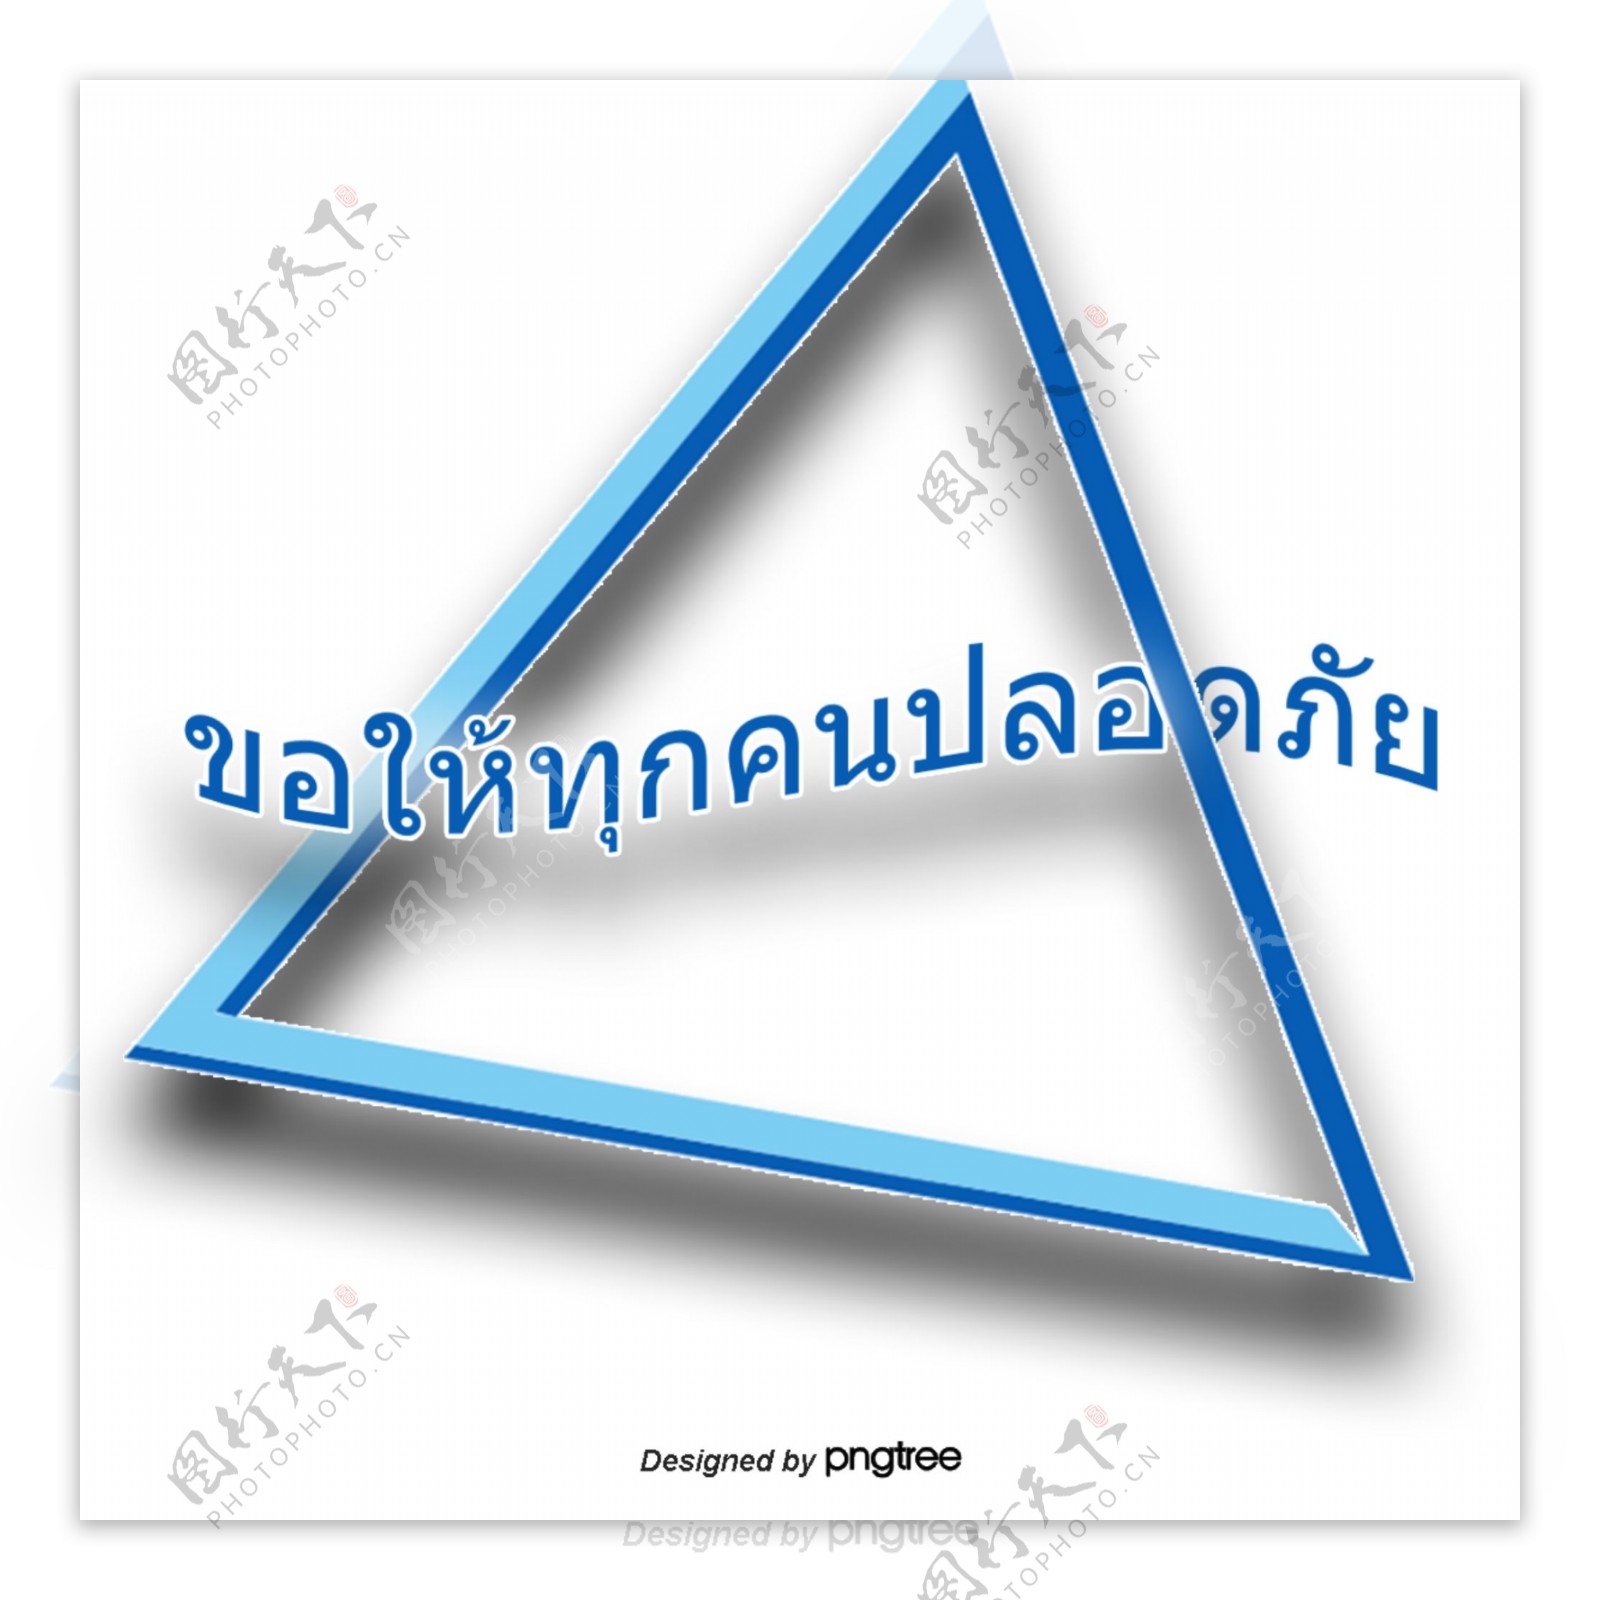 汉字字体的蓝色三角形泰国人的安全